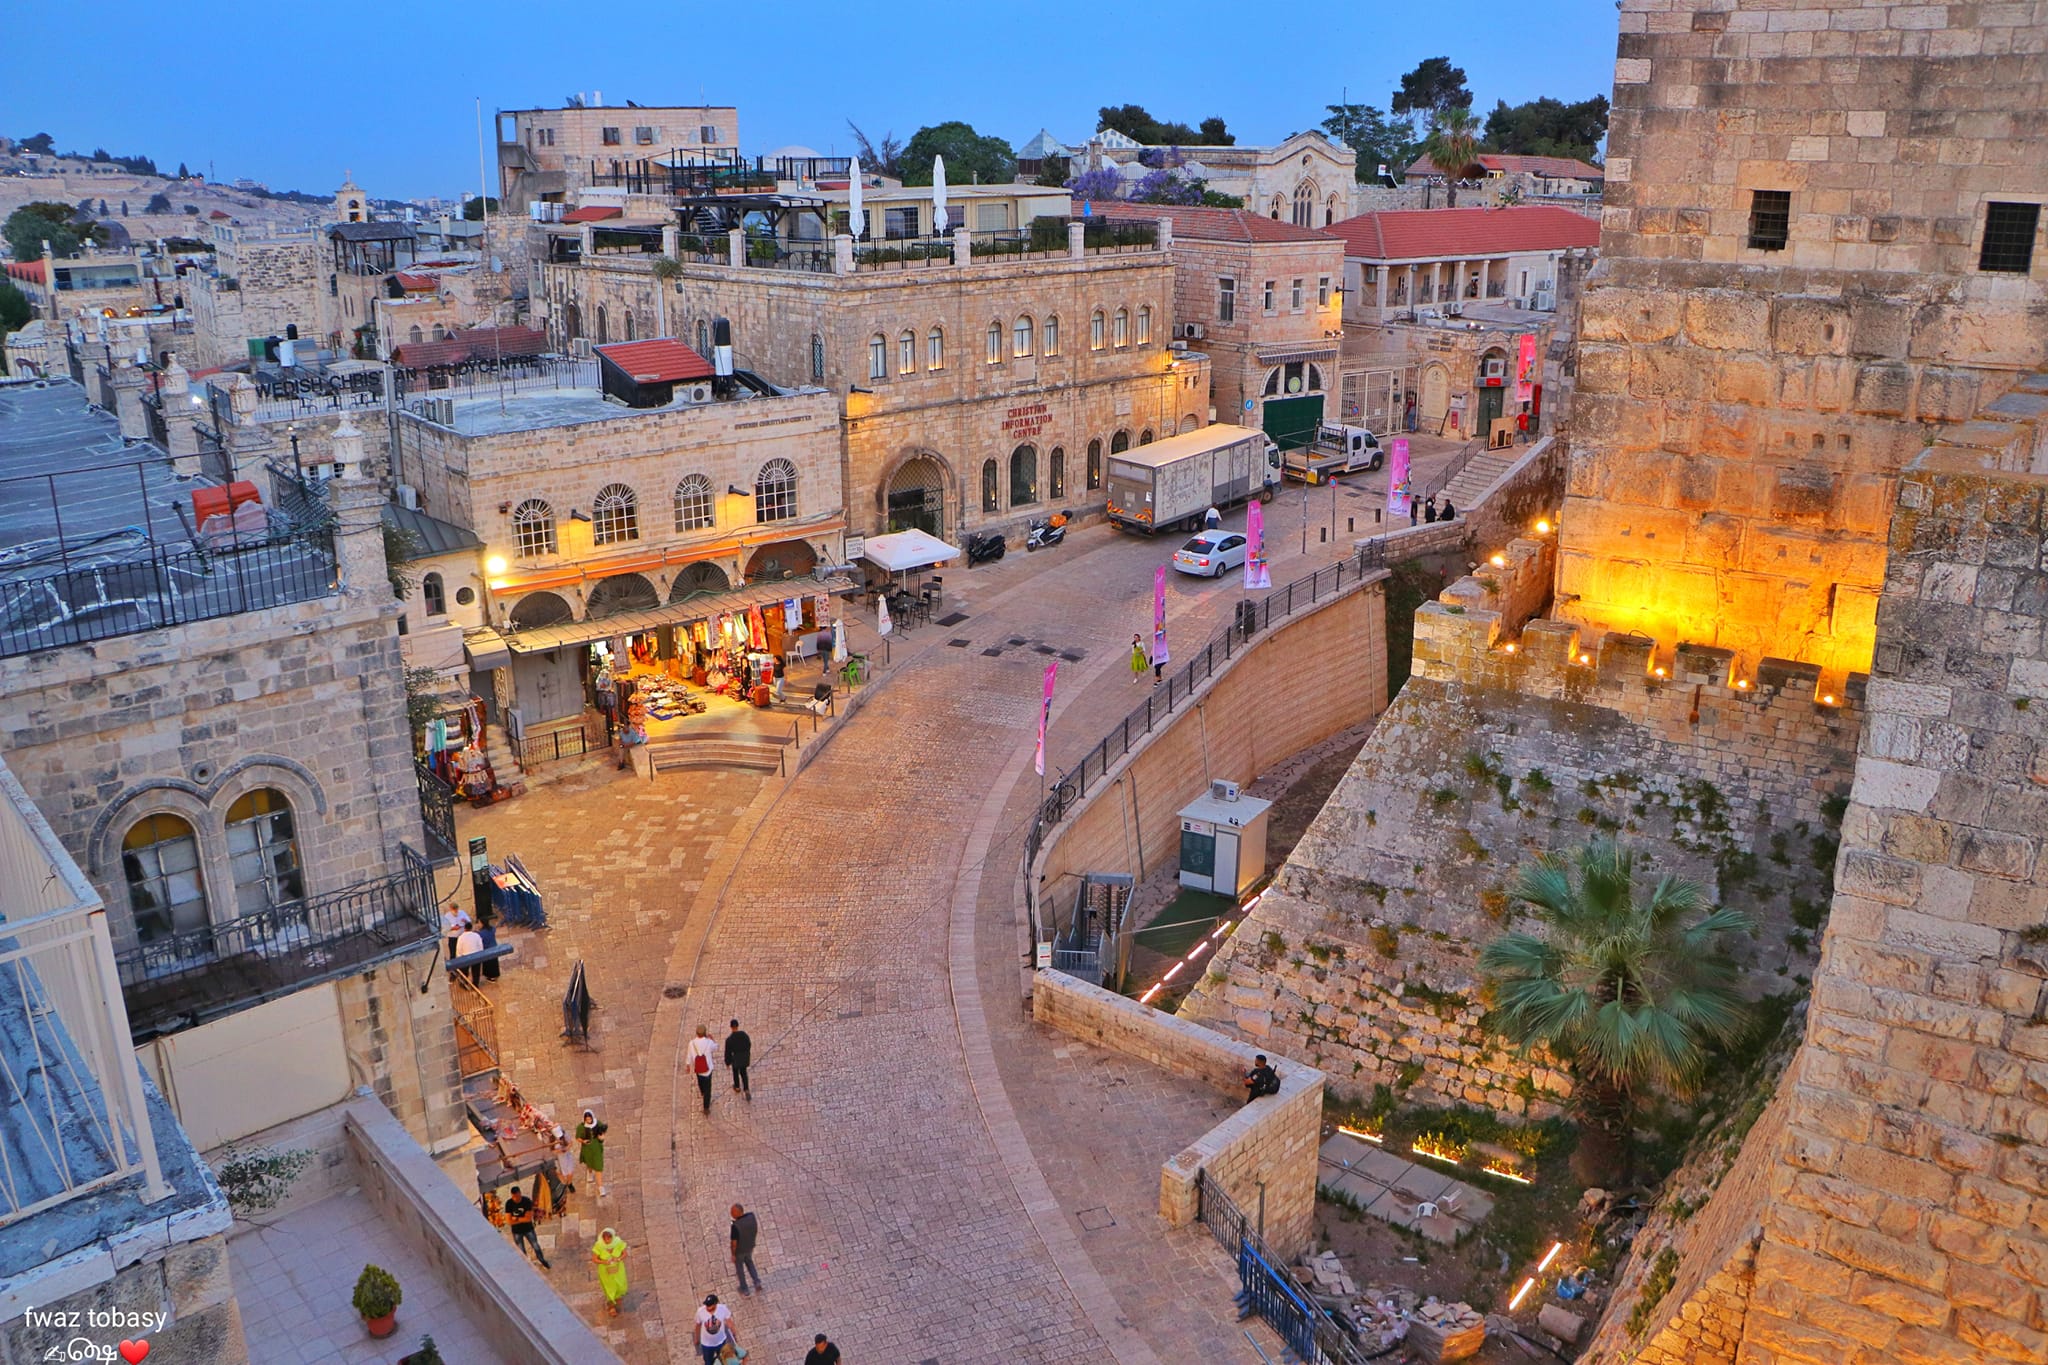 tour jerusalem in the footsteps of jesus